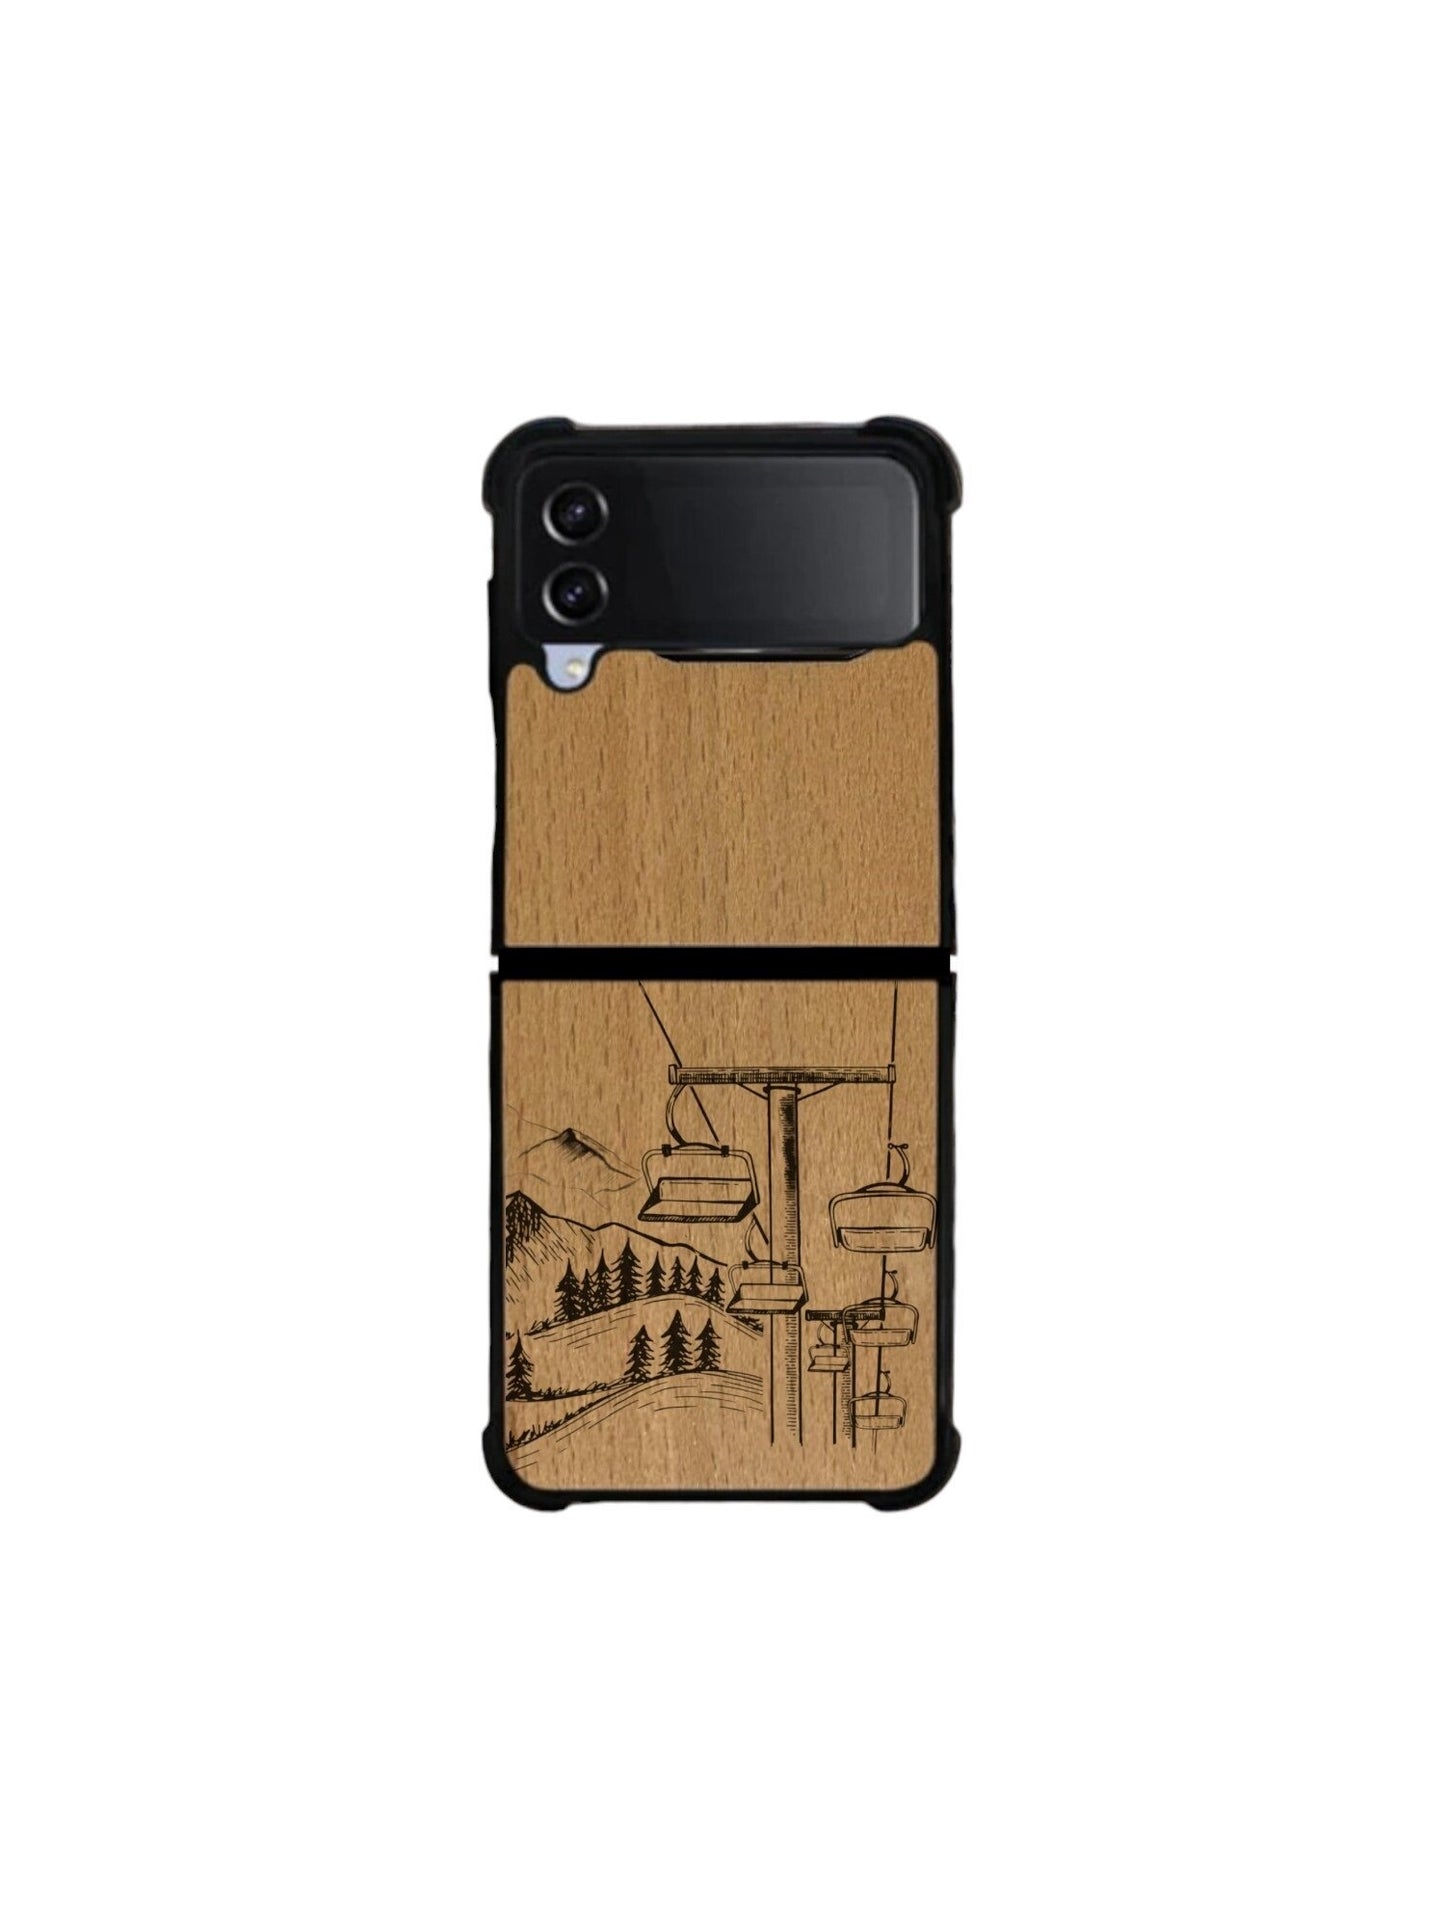 Samsung Galaxy Z Flip case - Telesiege